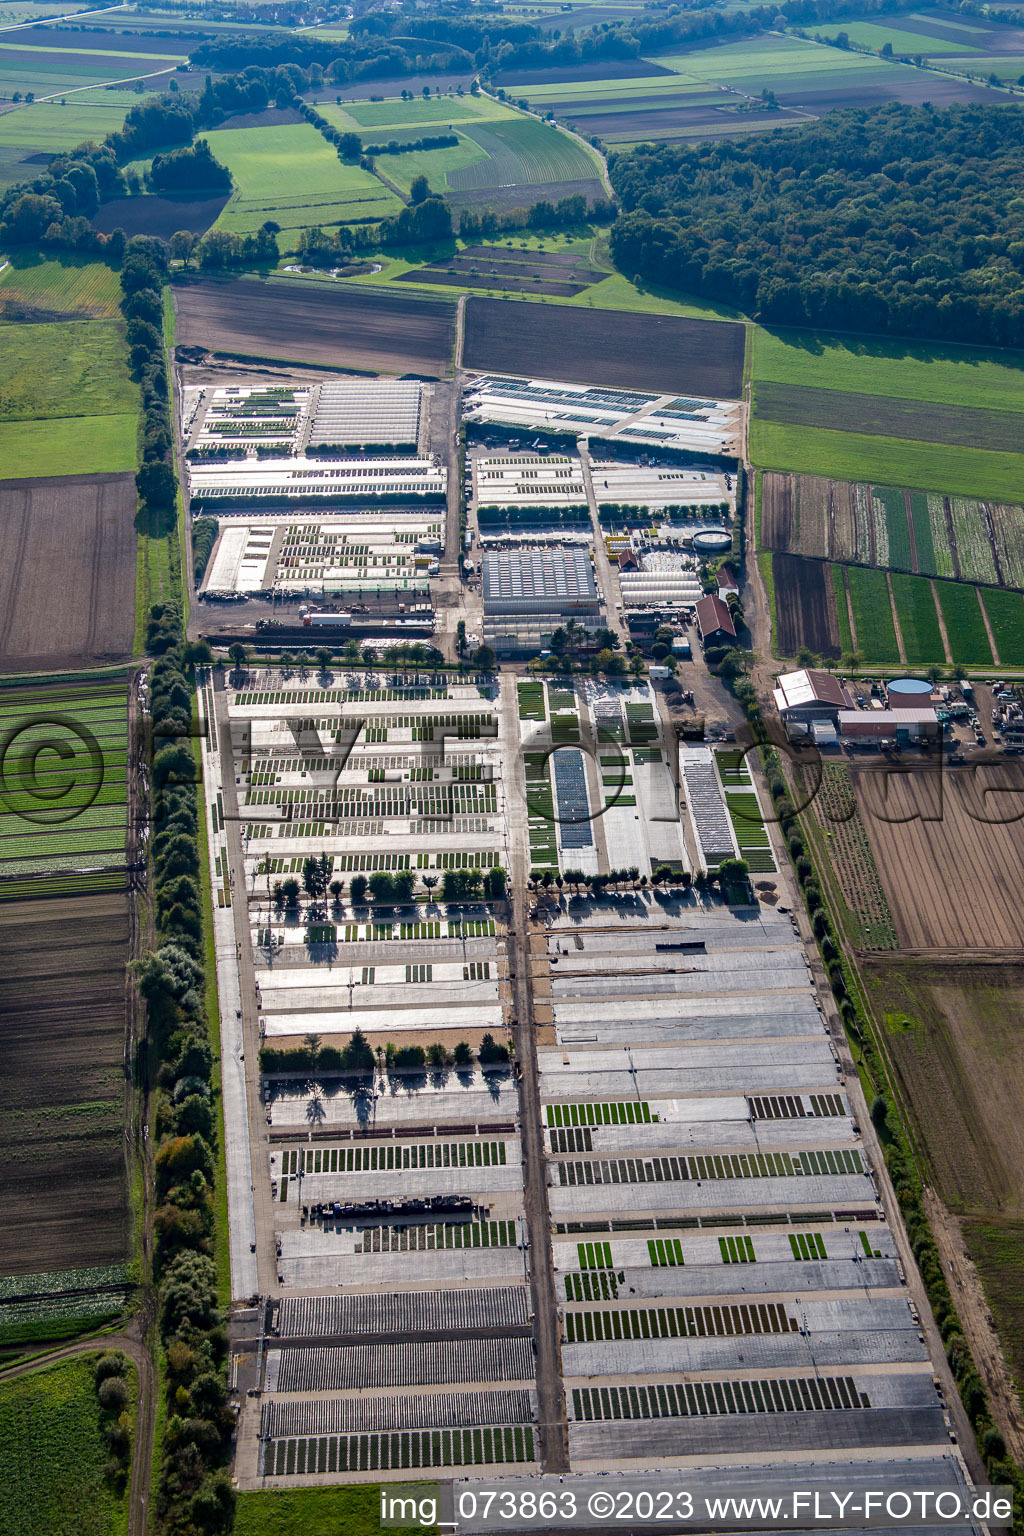 Building of Store plant market Dieter Denzer in Gochsheim in the state Bavaria, Germany